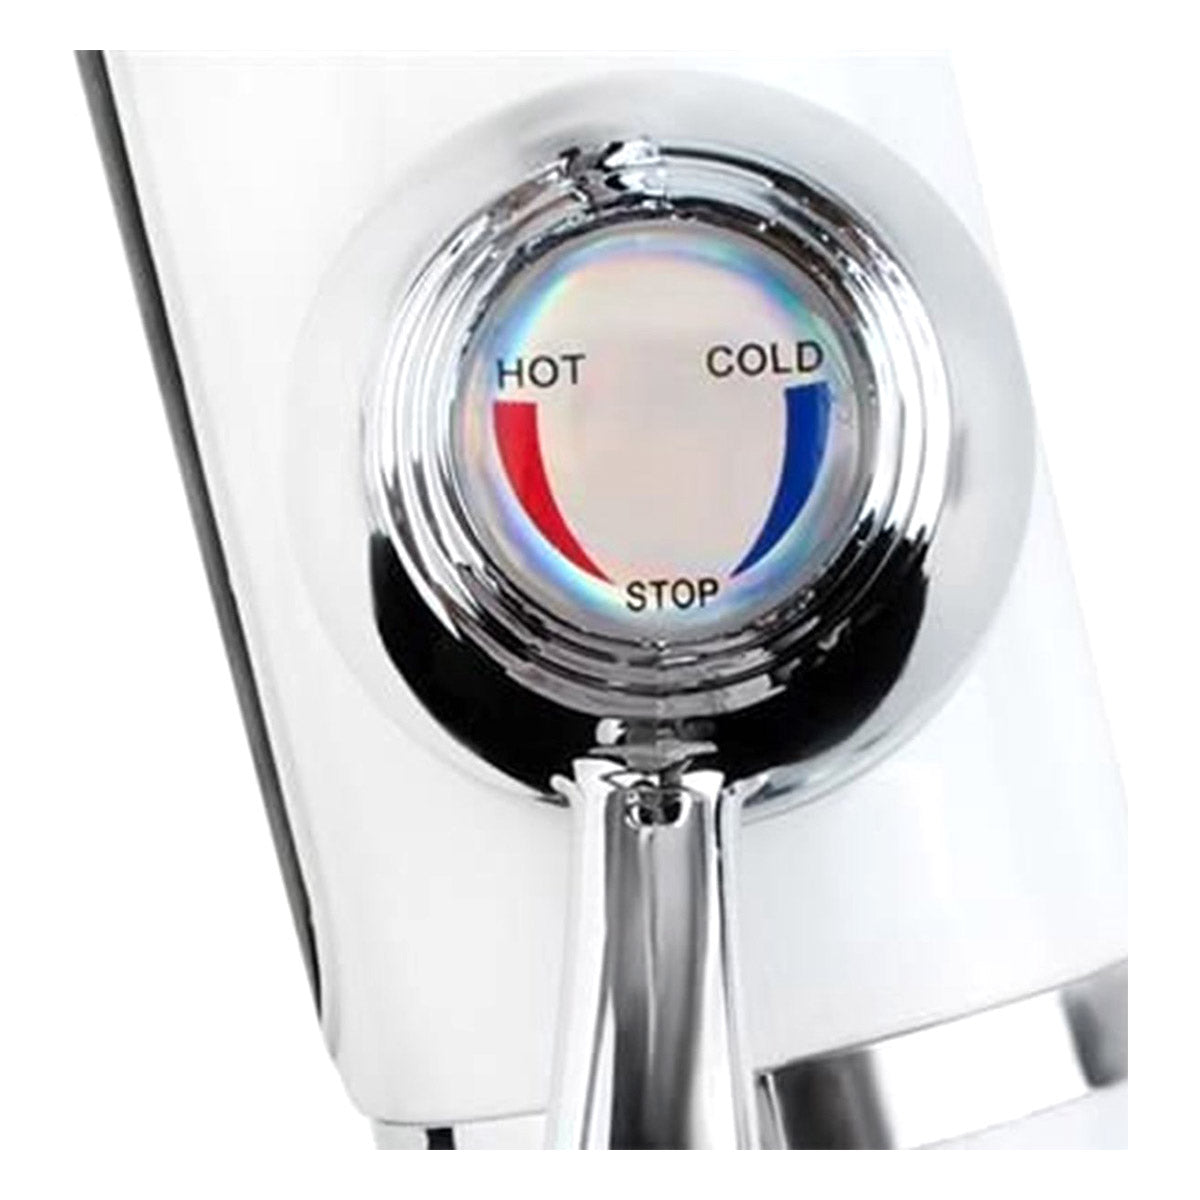 <tc>Ariko</tc> Elektrisch beheizter Wasserhahn und Dusche – elektrischer Wasserhahn bis zu 60 °C – digitales LCD – nicht kochendes Wasser – 3000 W – inklusive Duschkopf